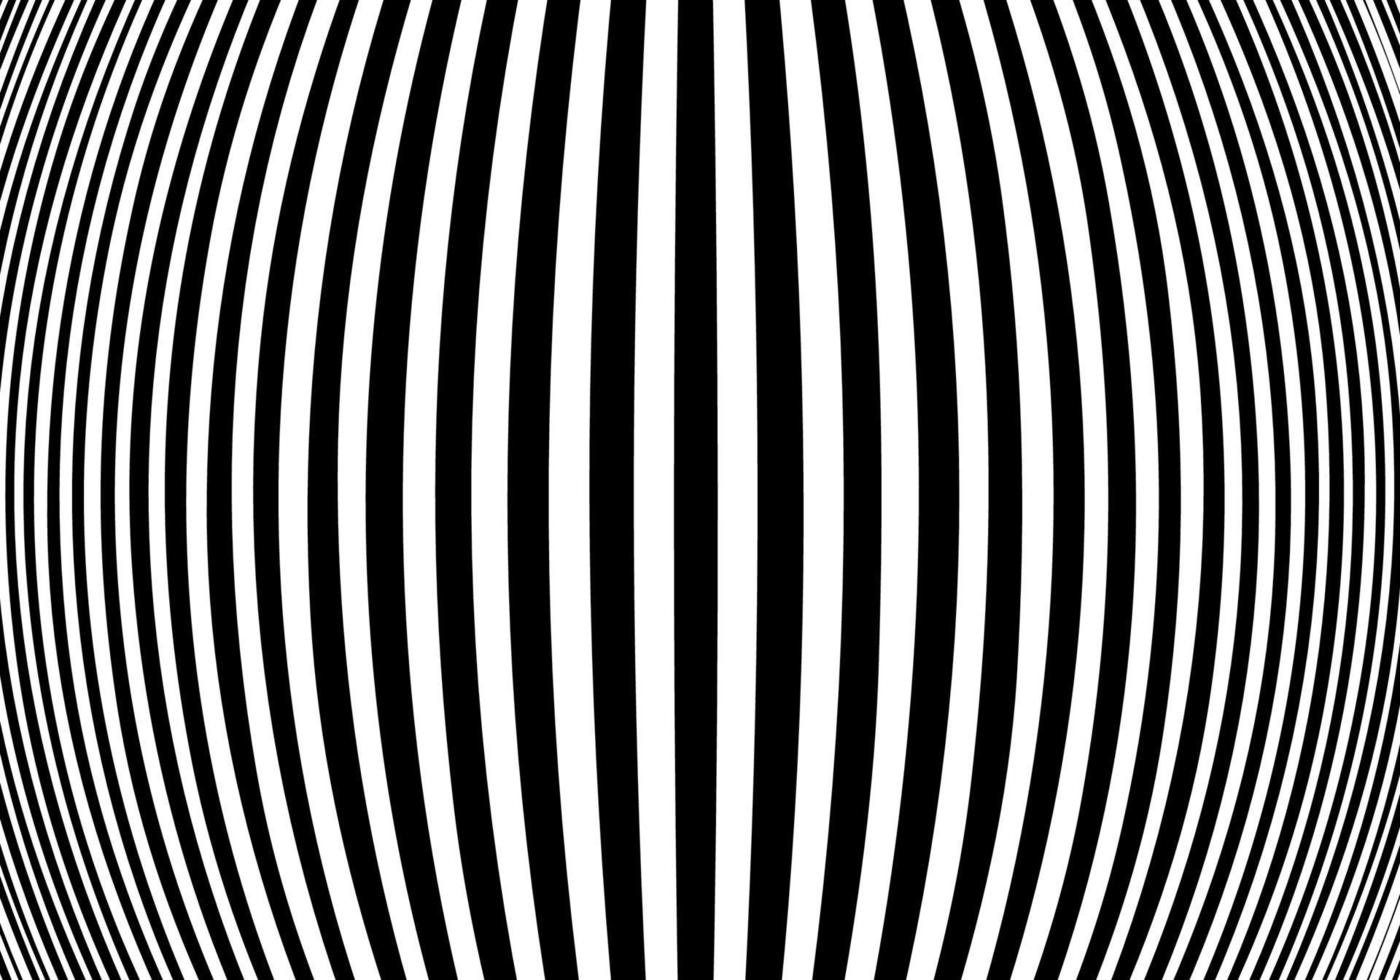 ilusión óptica de efecto de hinchazón de semitonos. diseño de fondo geométrico abstracto. vector patrón retro blanco y negro sin costuras.